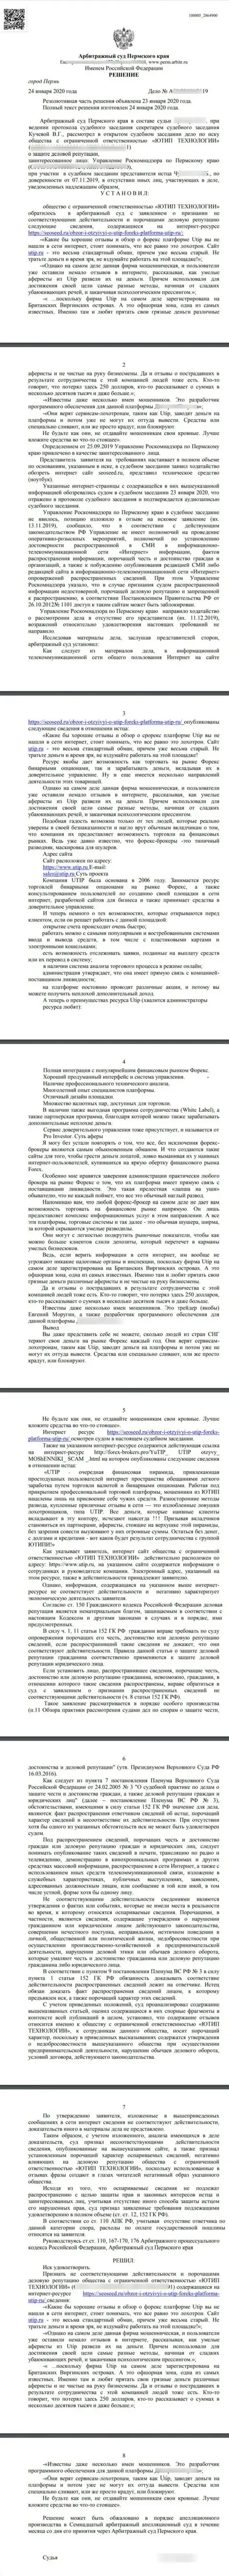 Исковое заявление мошенников UTIP Ru в отношении информационного ресурса сеосид, который удовлетворен самым справедливым судом в мире